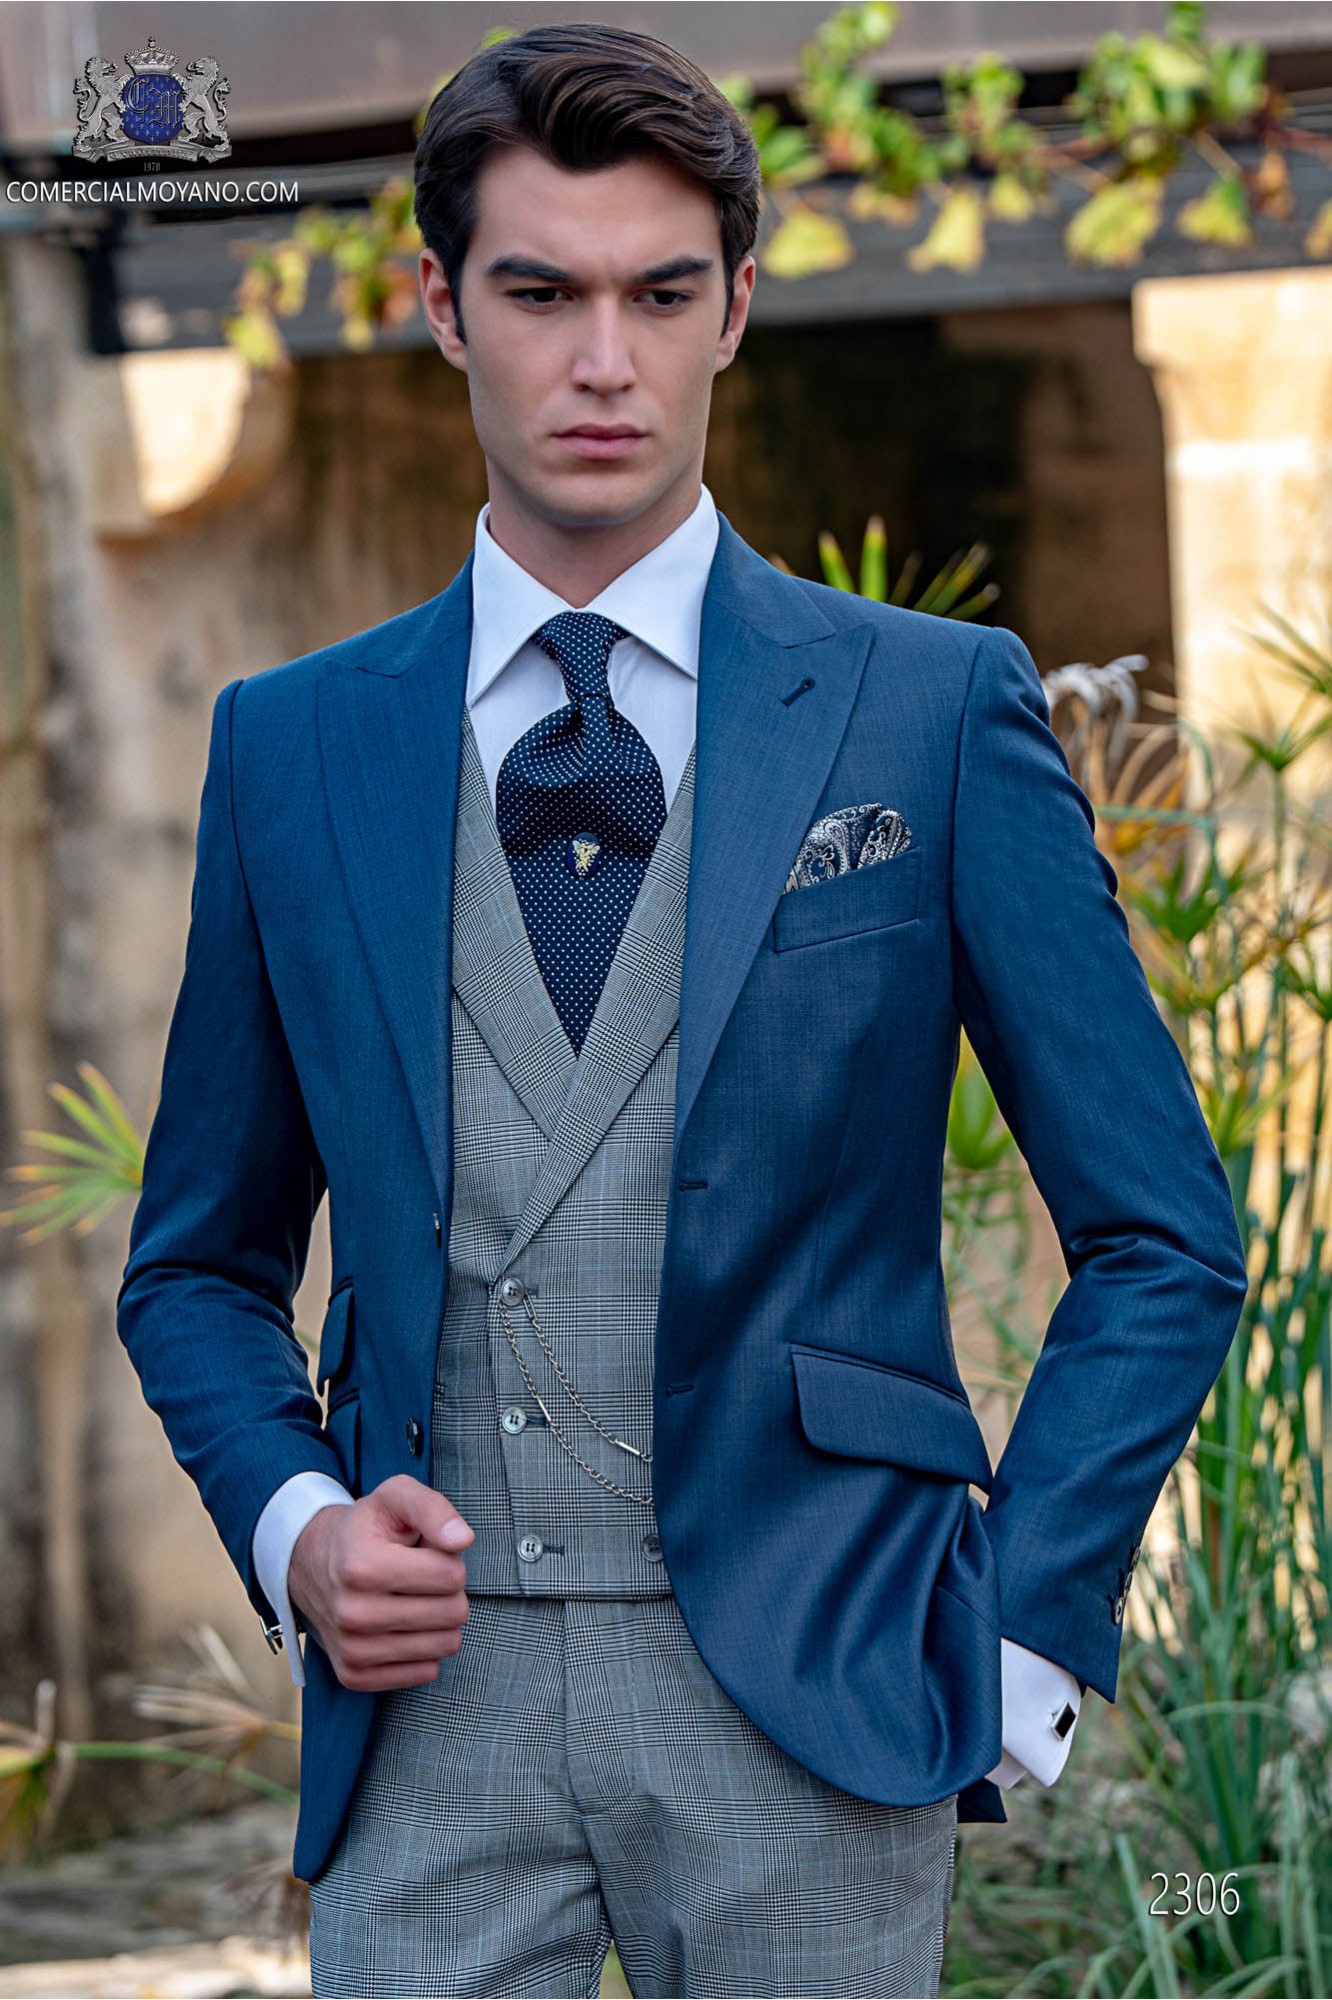 Traje de novio azul con pantalón gales azul modelo: 2306 Mario Moyano colección Gentleman